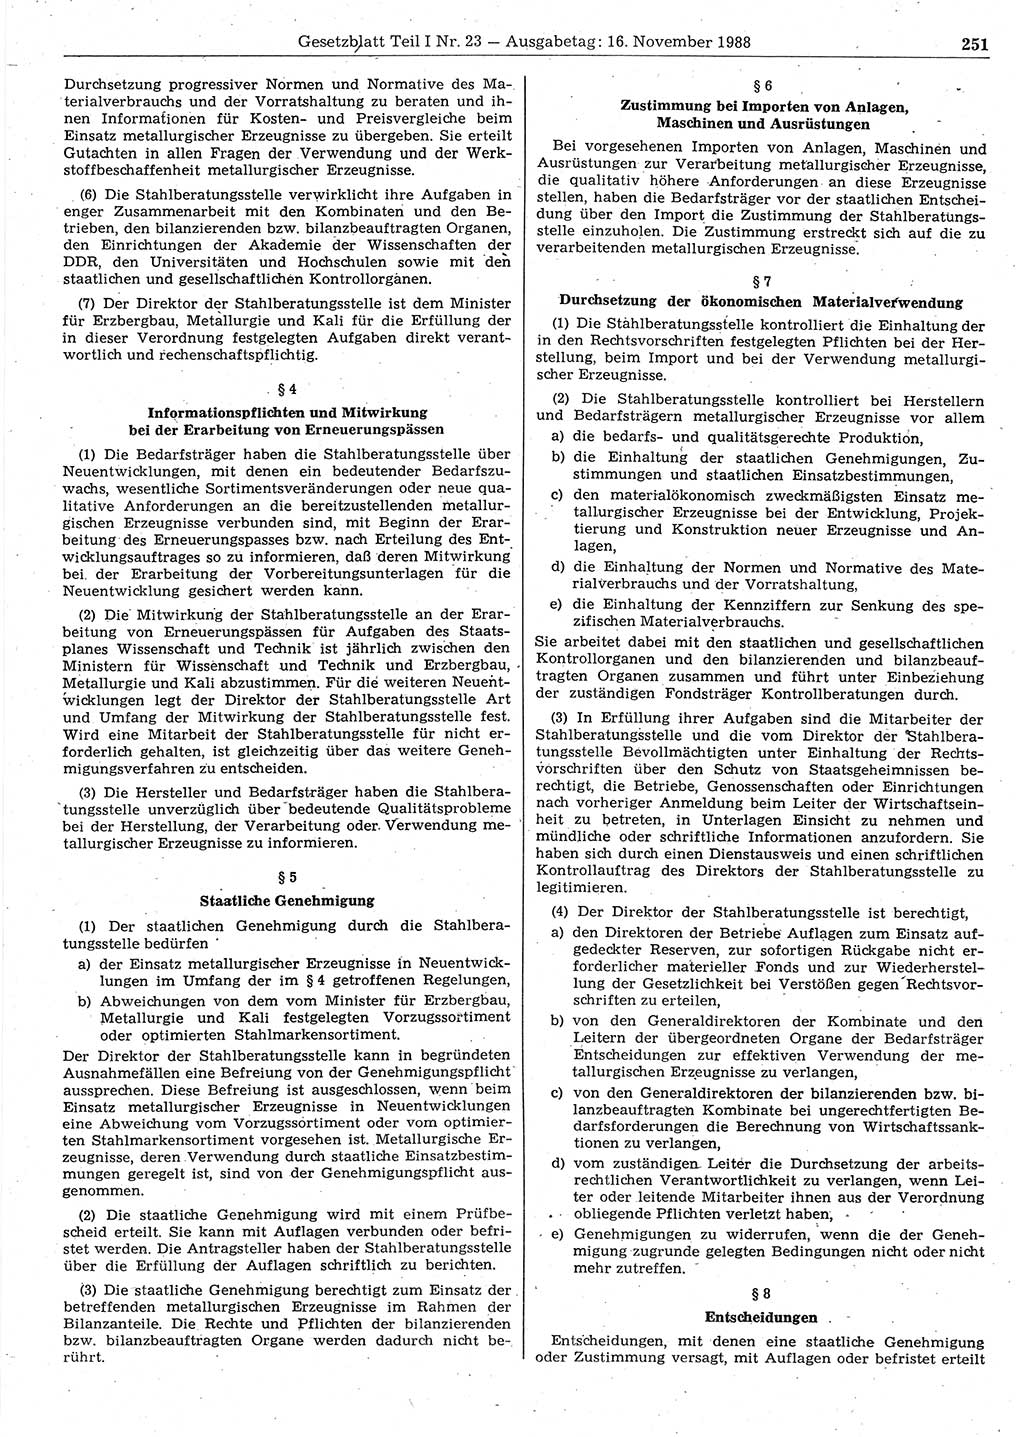 Gesetzblatt (GBl.) der Deutschen Demokratischen Republik (DDR) Teil Ⅰ 1988, Seite 251 (GBl. DDR Ⅰ 1988, S. 251)